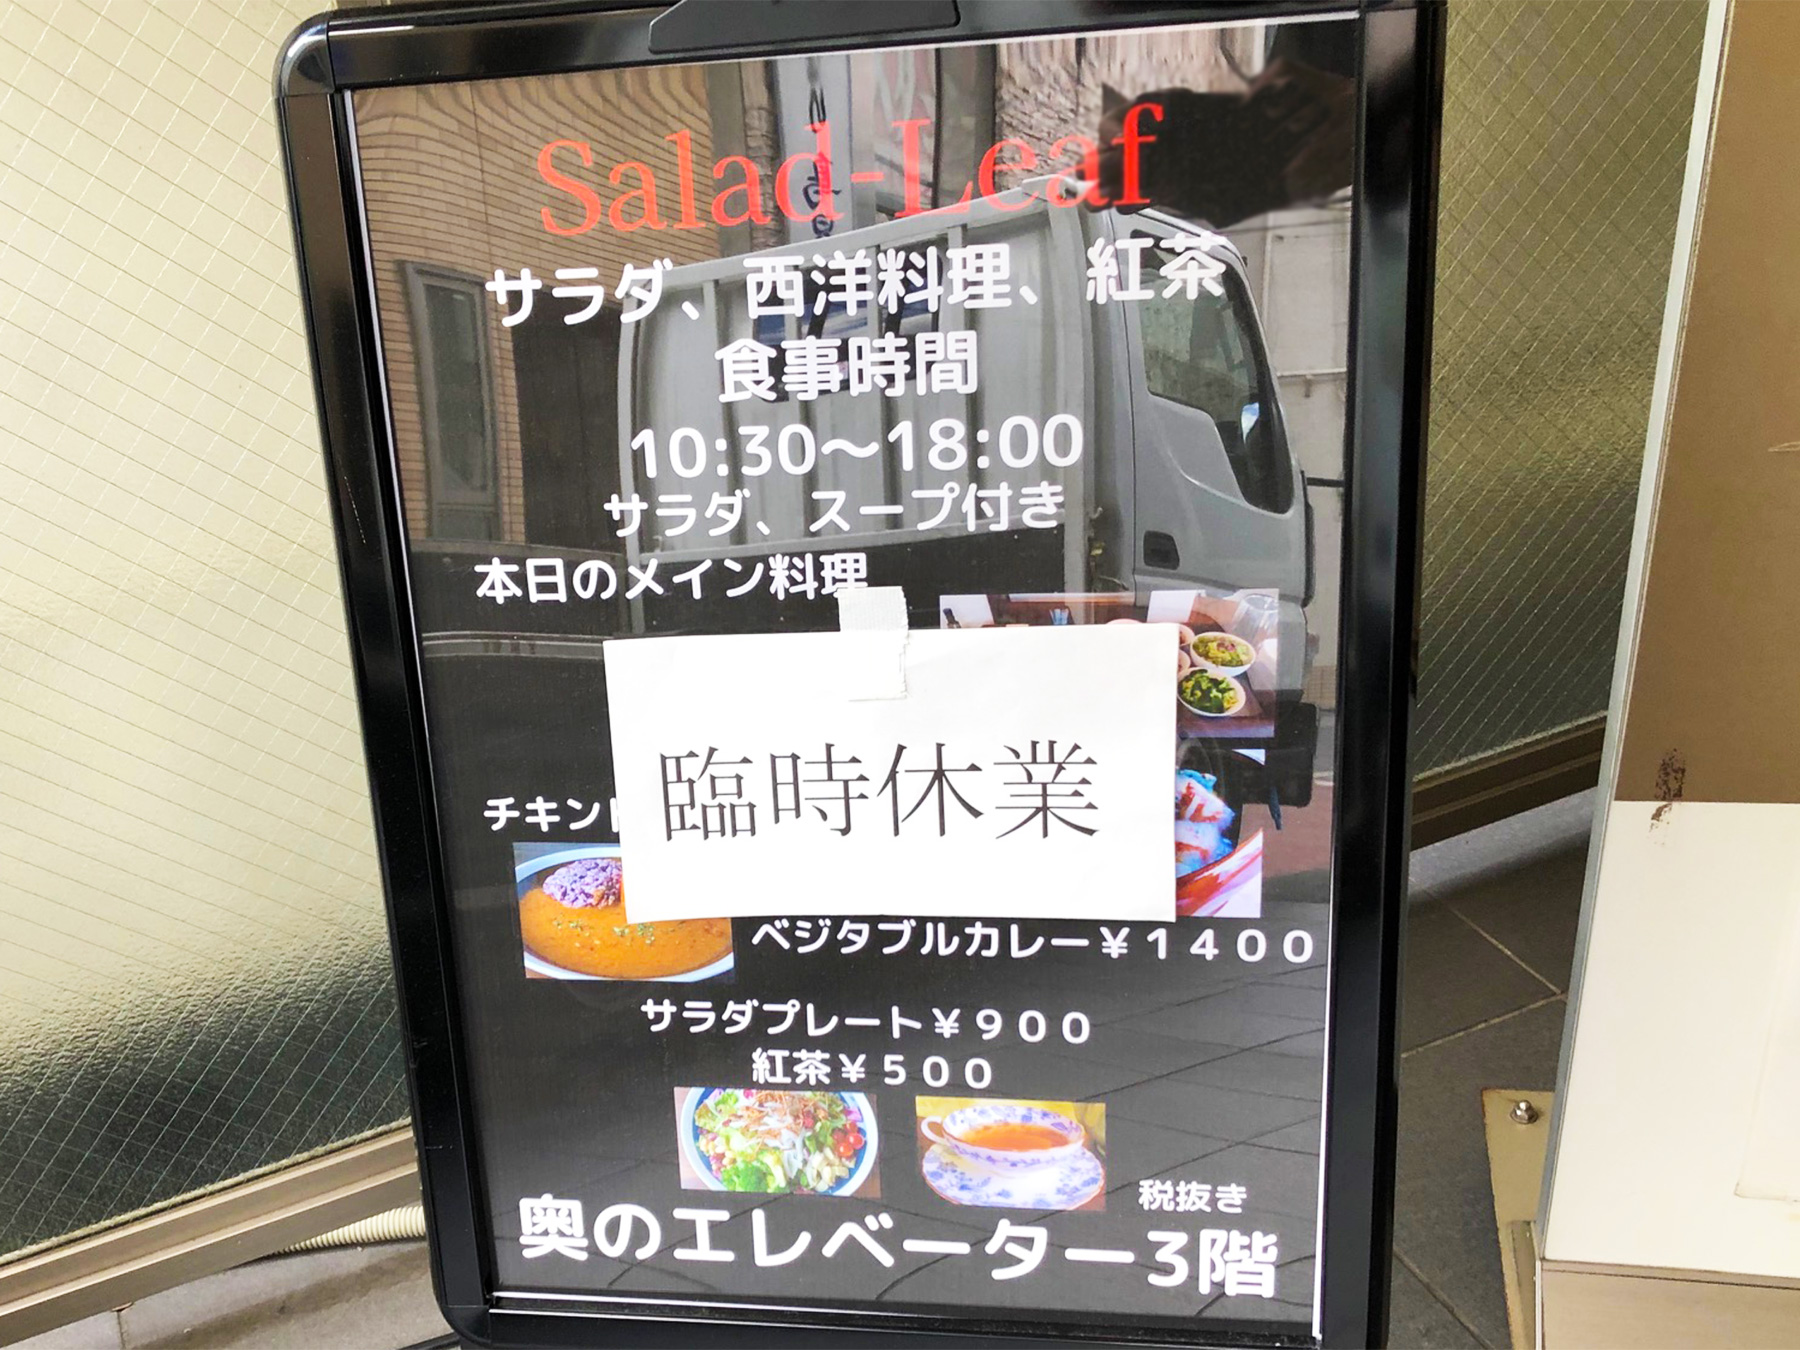 浦和駅すぐそば、サラダリーフの営業時間が10:30~18:00に変更